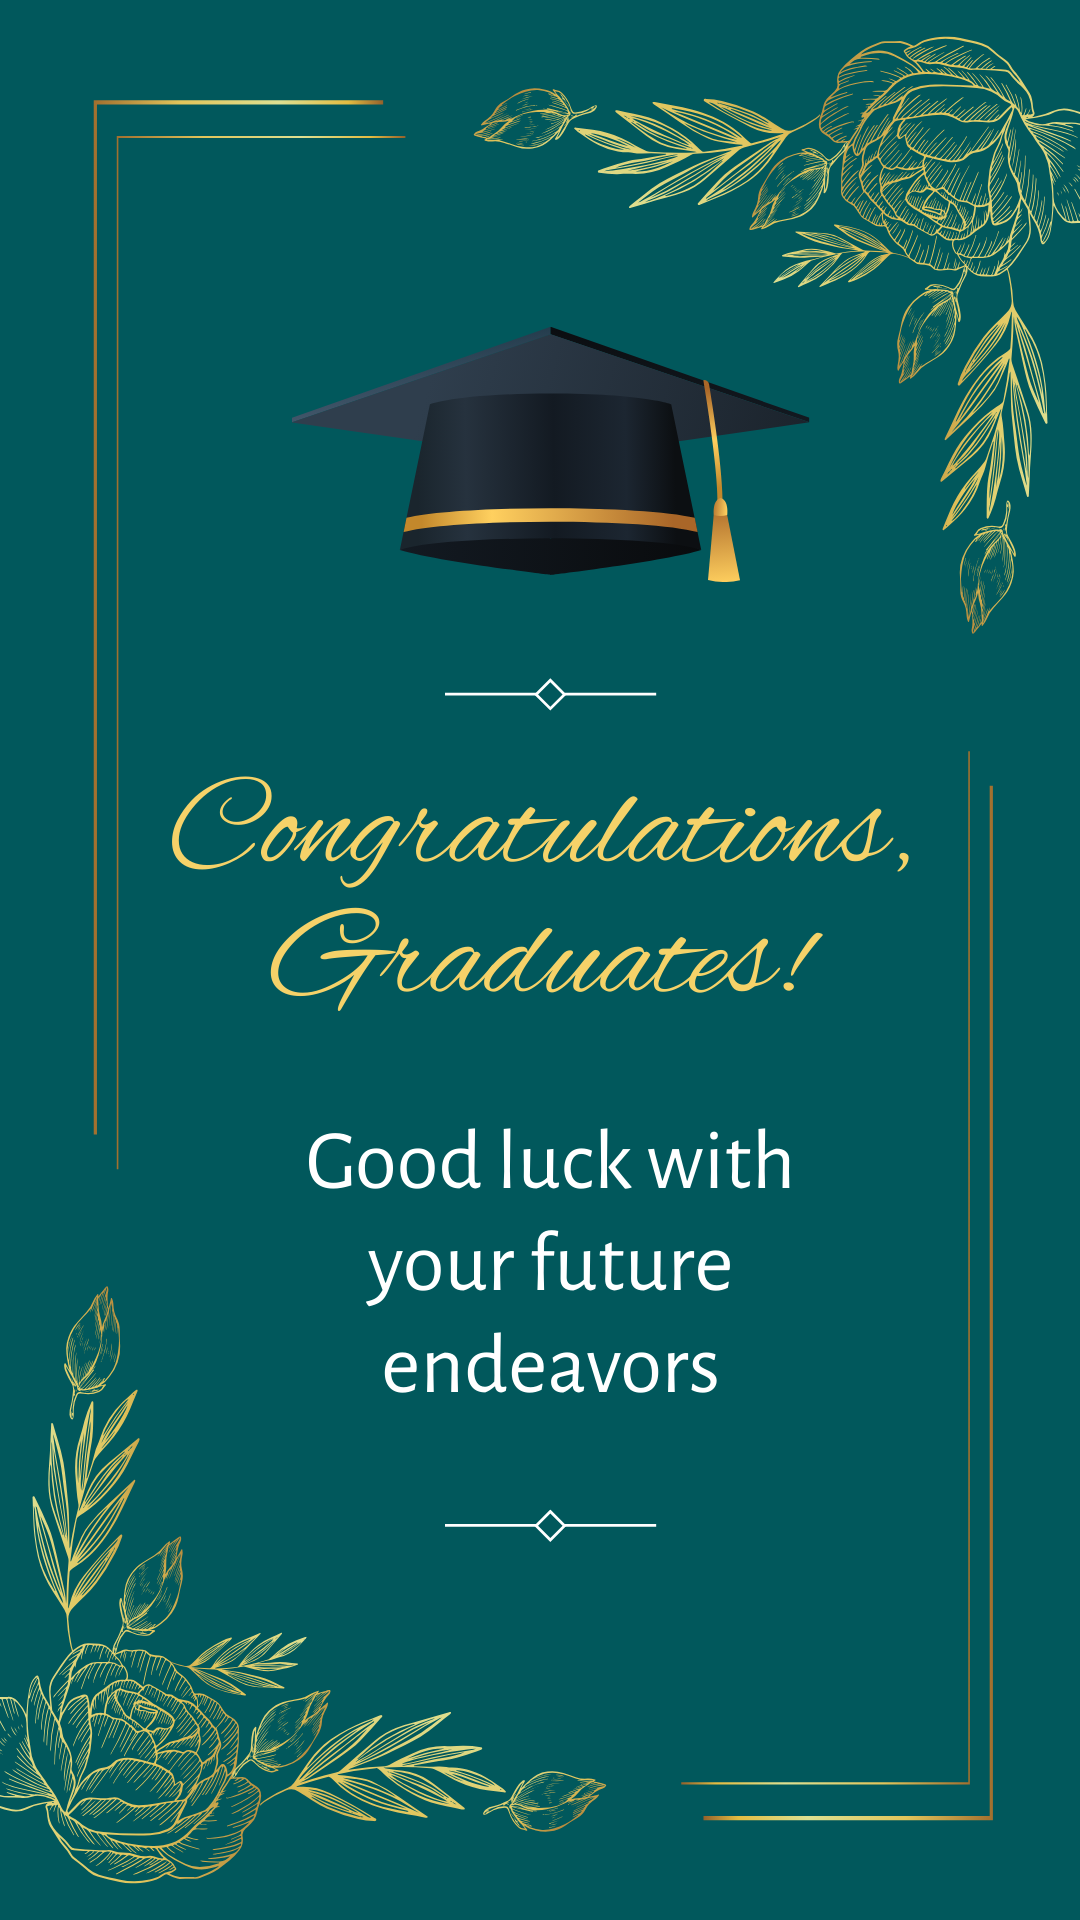 Congratulations graduation card Template